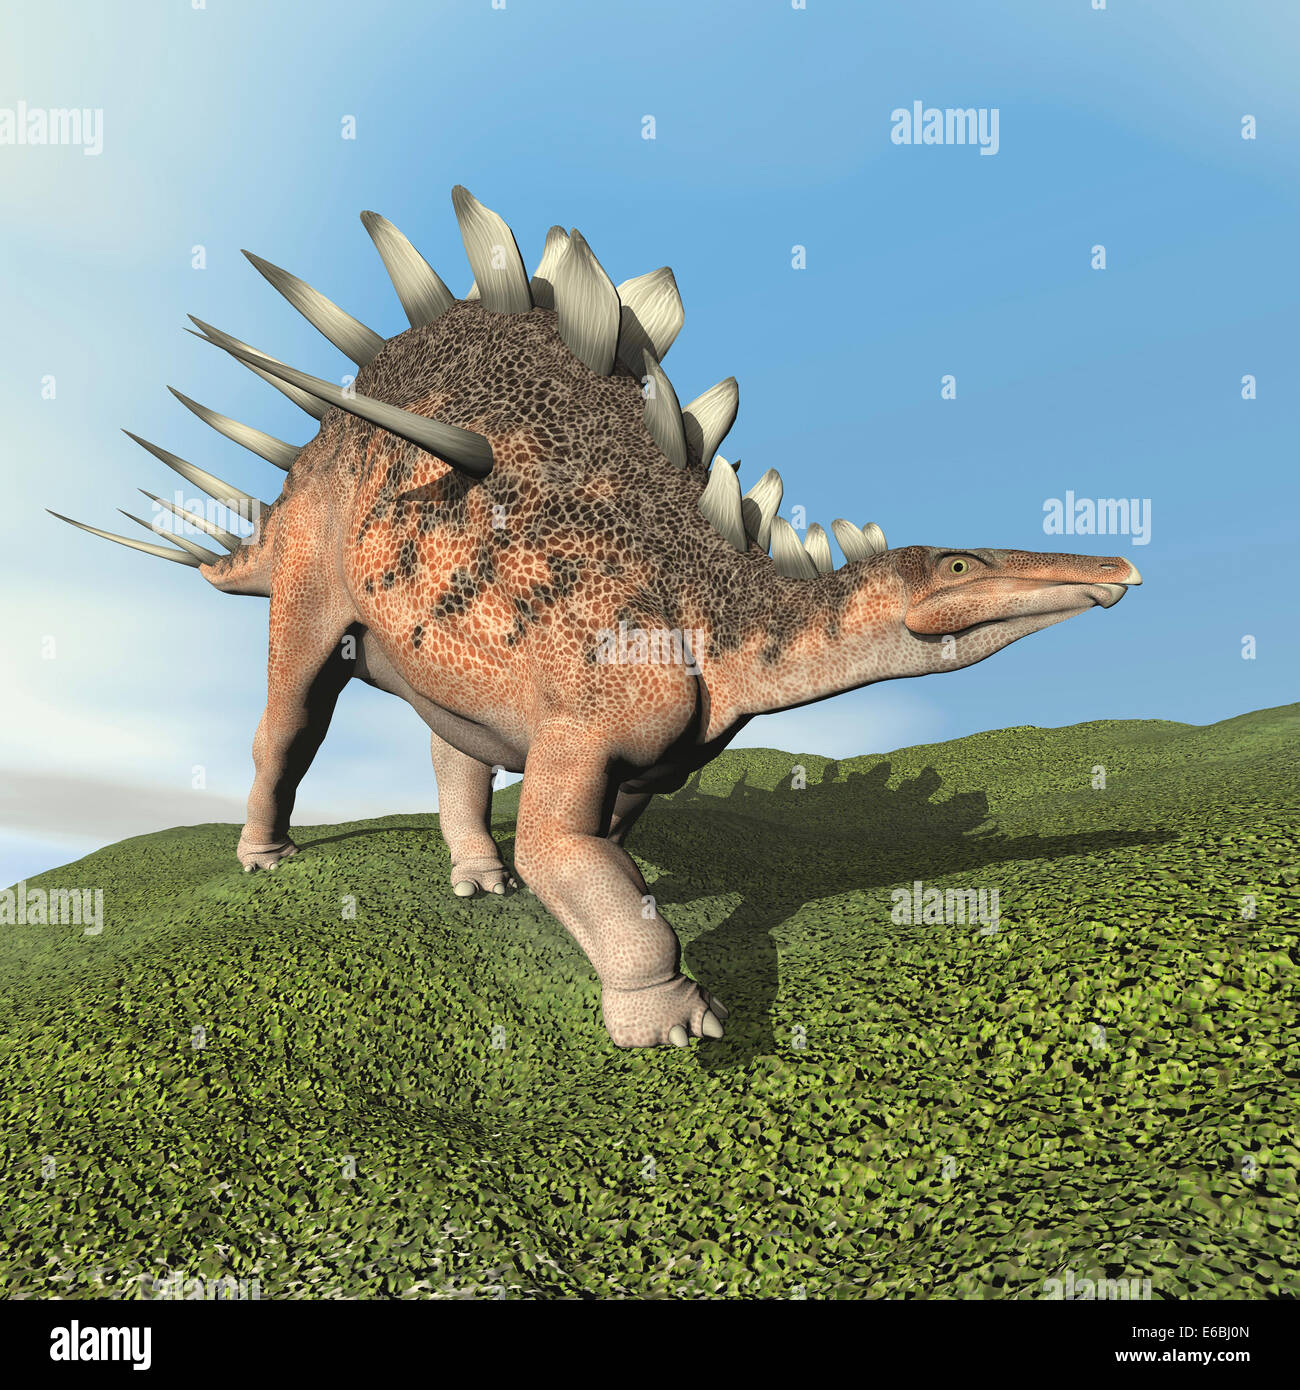 Kentrosaurus dinosaur walking on the grass. Stock Photo